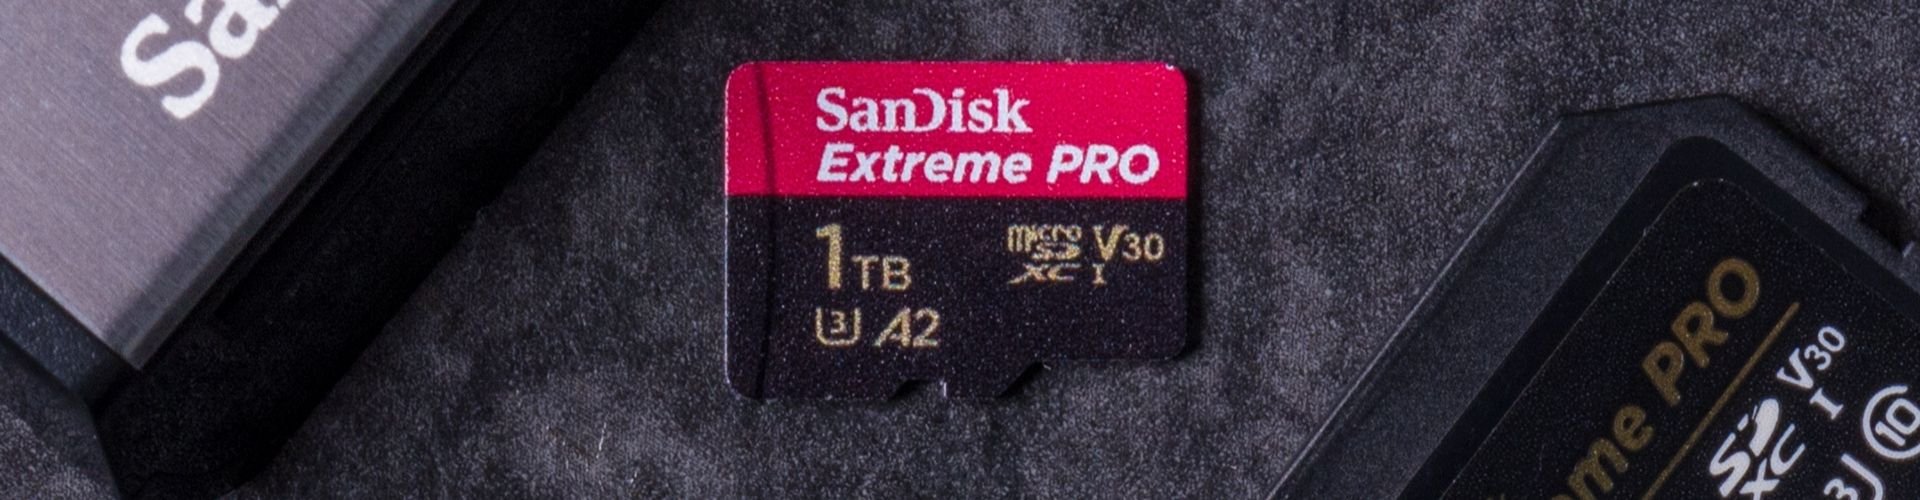 SanDisk Memory Card Bulk Buy